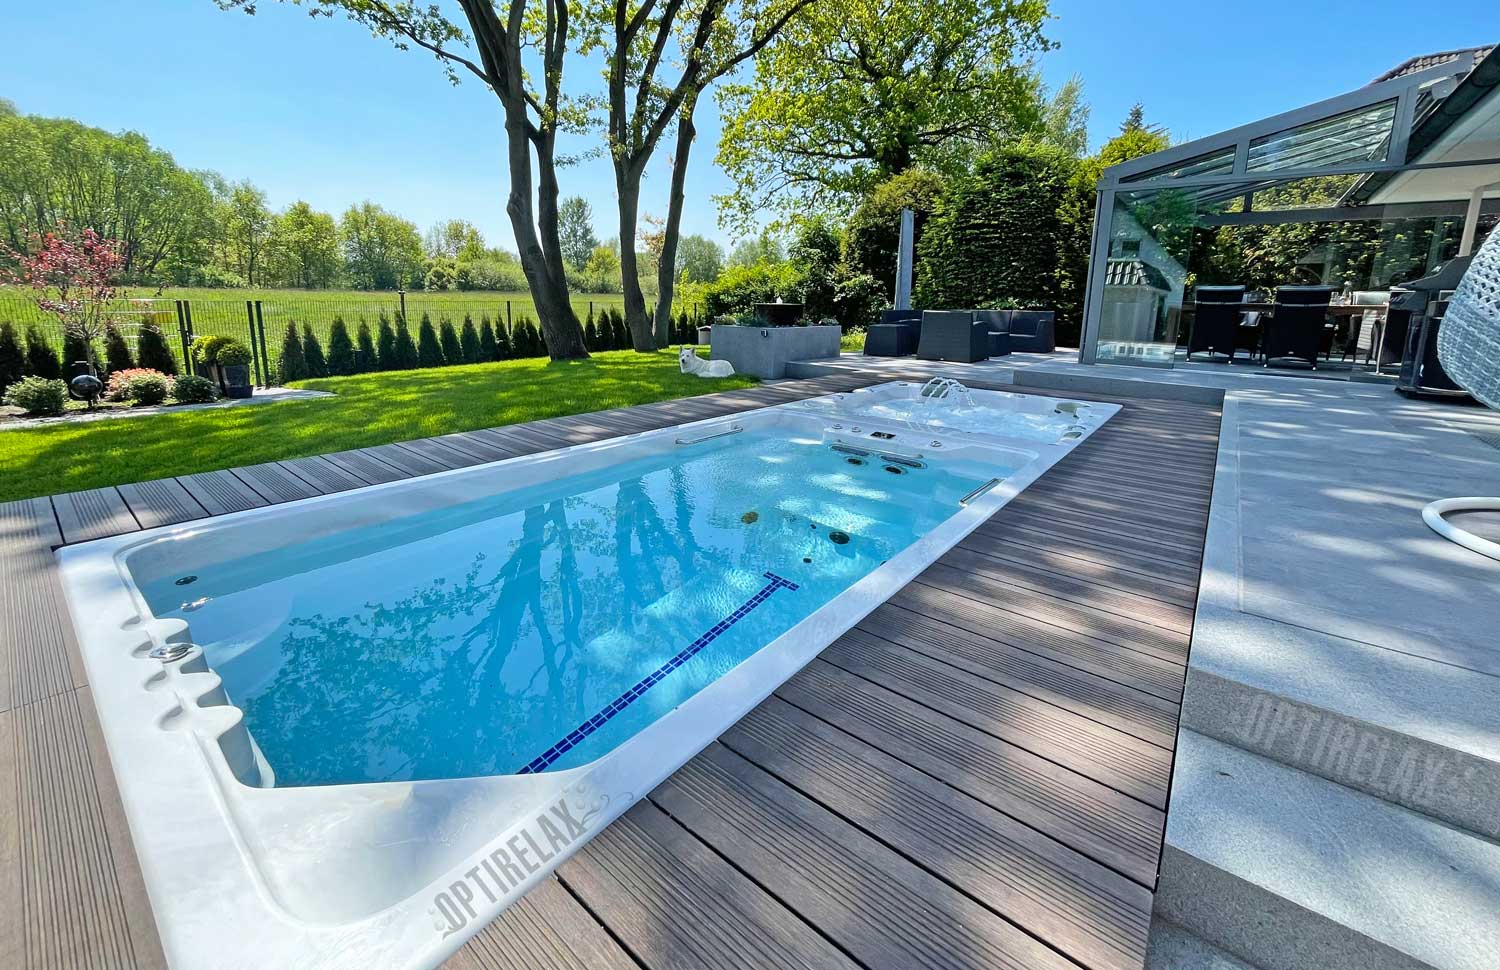 Swimspa-Pool-OPTIRELAX-OPTIMUM-DUO-Schwimmspa-Gartenpool-mit-Whirlpool-und-Gegenstrom-Luxus-Pool-mit-Abdeckung